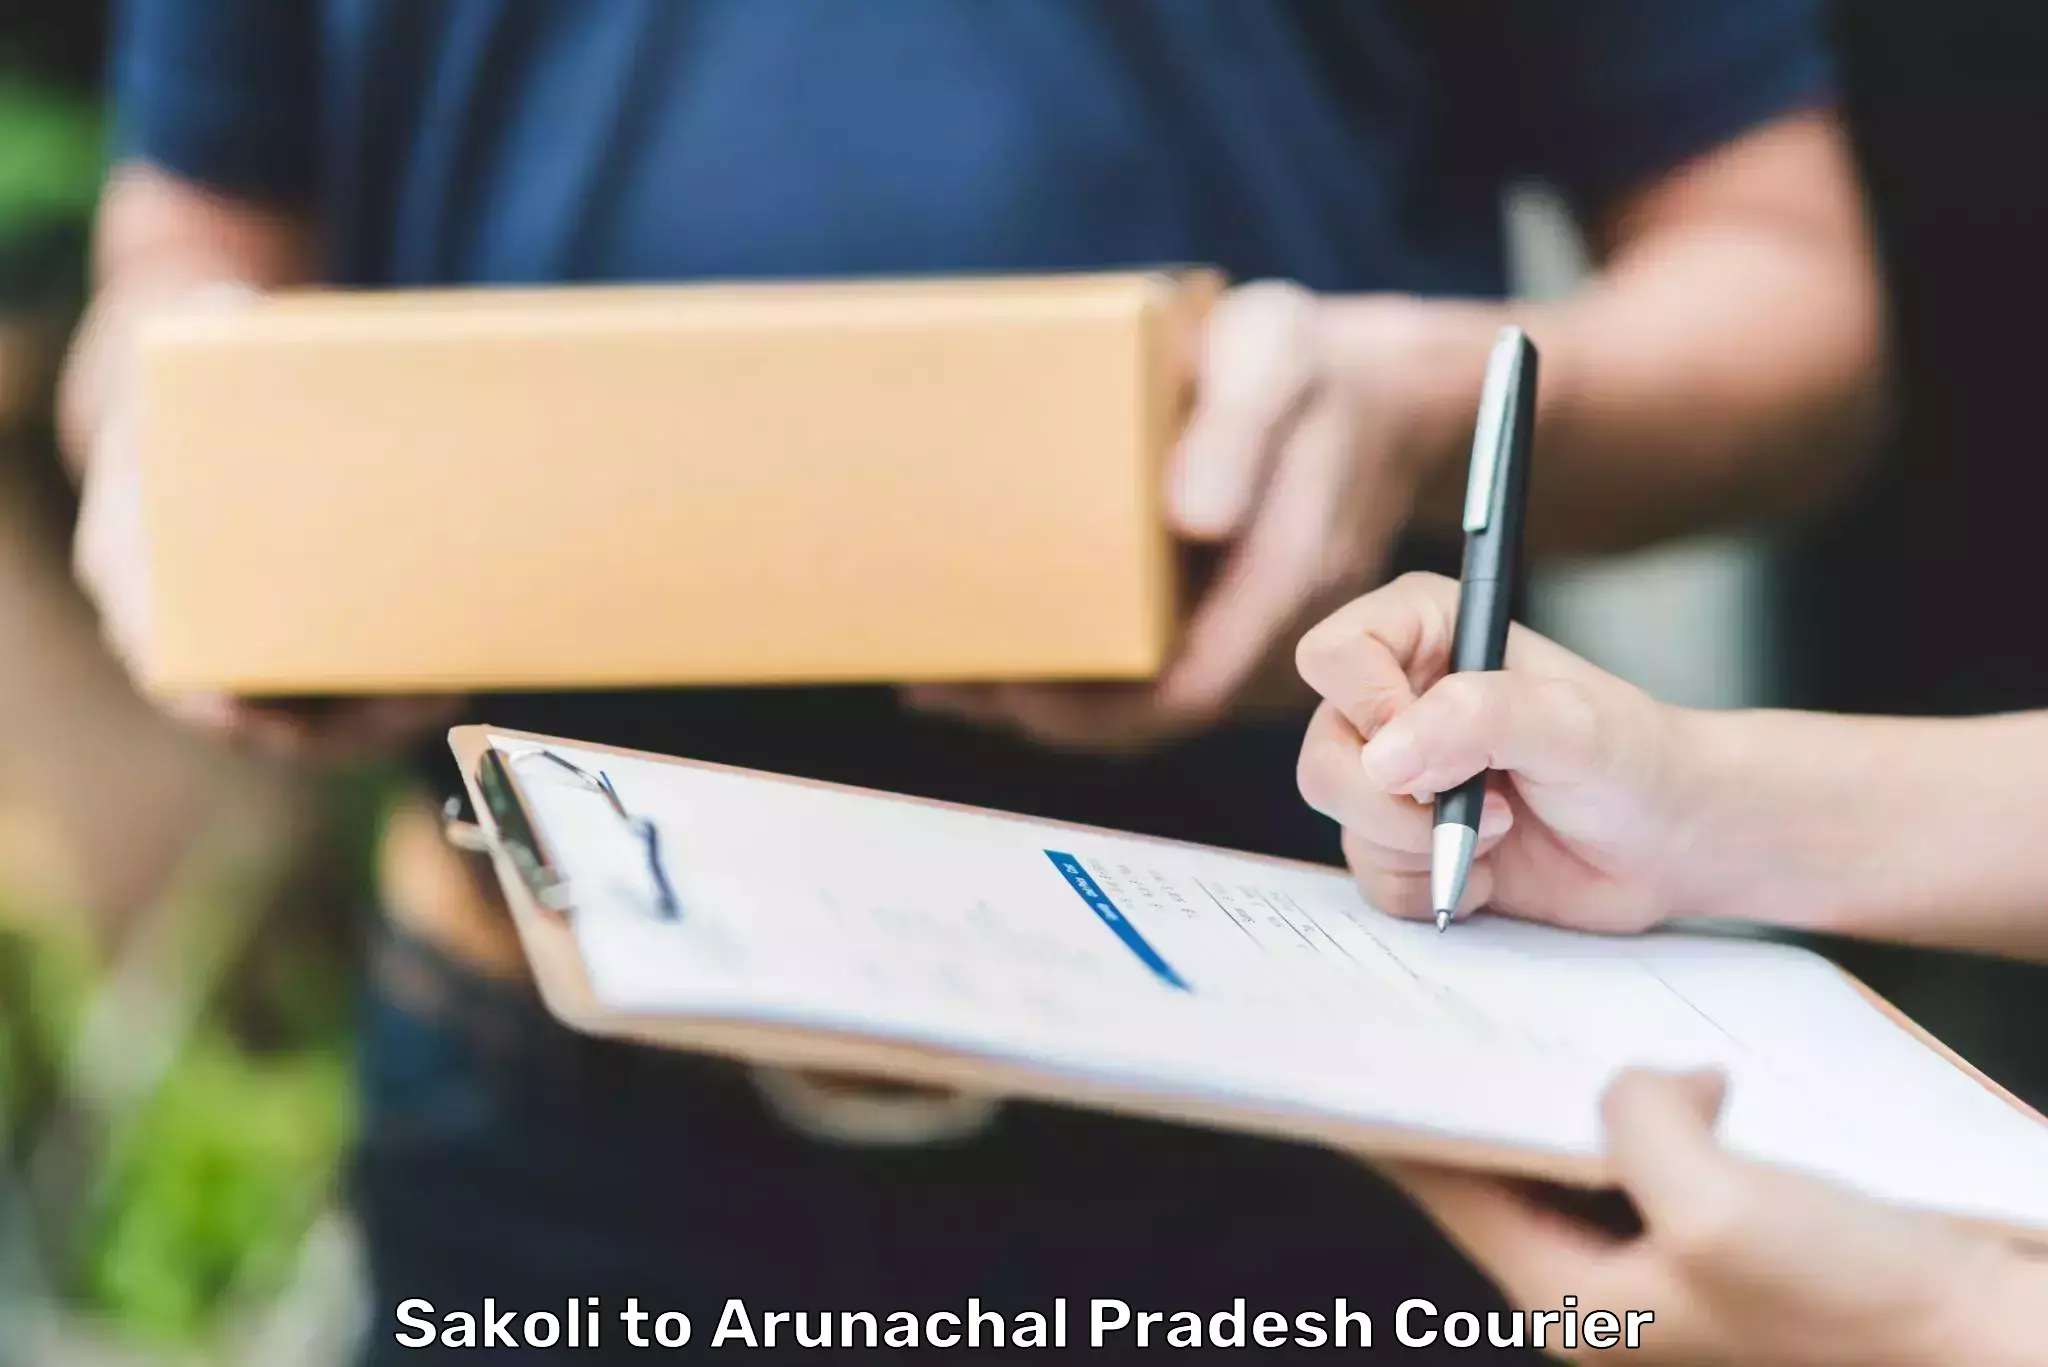 Large-scale shipping solutions Sakoli to Arunachal Pradesh